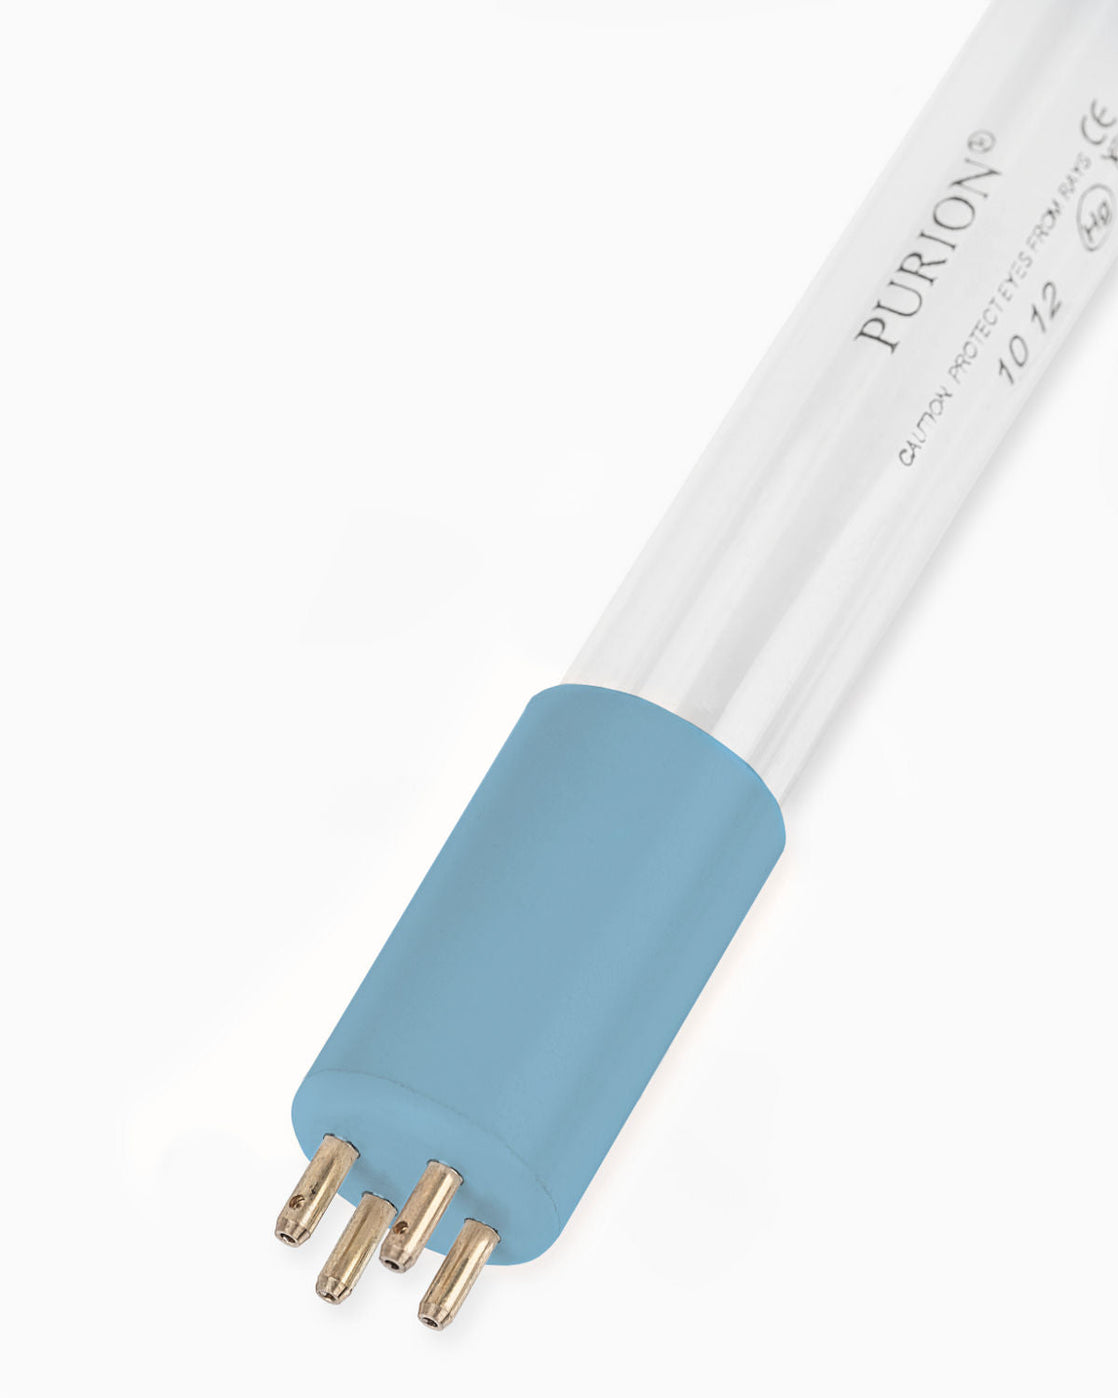 Eine PURION 500 110 - 240 V AC OTC-Lichtröhre auf weißem Hintergrund für Desinfektionsanlagen, hergestellt von UV Concept GmbH.